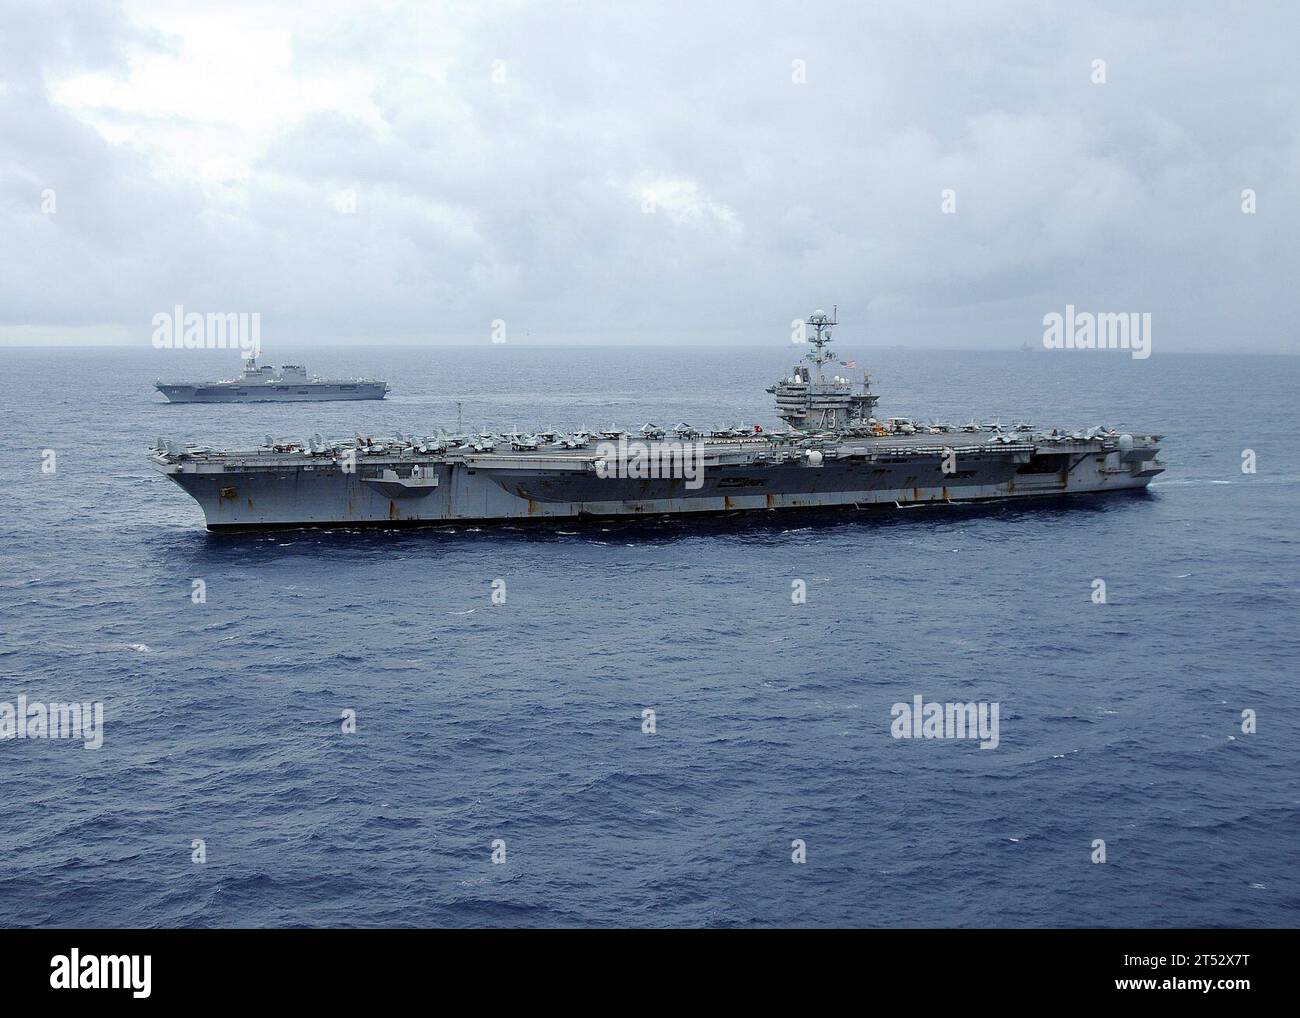 0911176720T-094 OCEANO PACIFICO (17 novembre 2009) la portaerei USS George Washington (CVN 73) e il cacciatorpediniere JS Hyuga (DDH 181) transitano nell'Oceano Pacifico. Le navi della Marina degli Stati Uniti e della forza di autodifesa marittima del Giappone stanno partecipando all'esercitazione annuale (ANNUALEX 21G), un esercizio bilaterale progettato per migliorare le capacità di entrambe le forze navali. Foto Stock